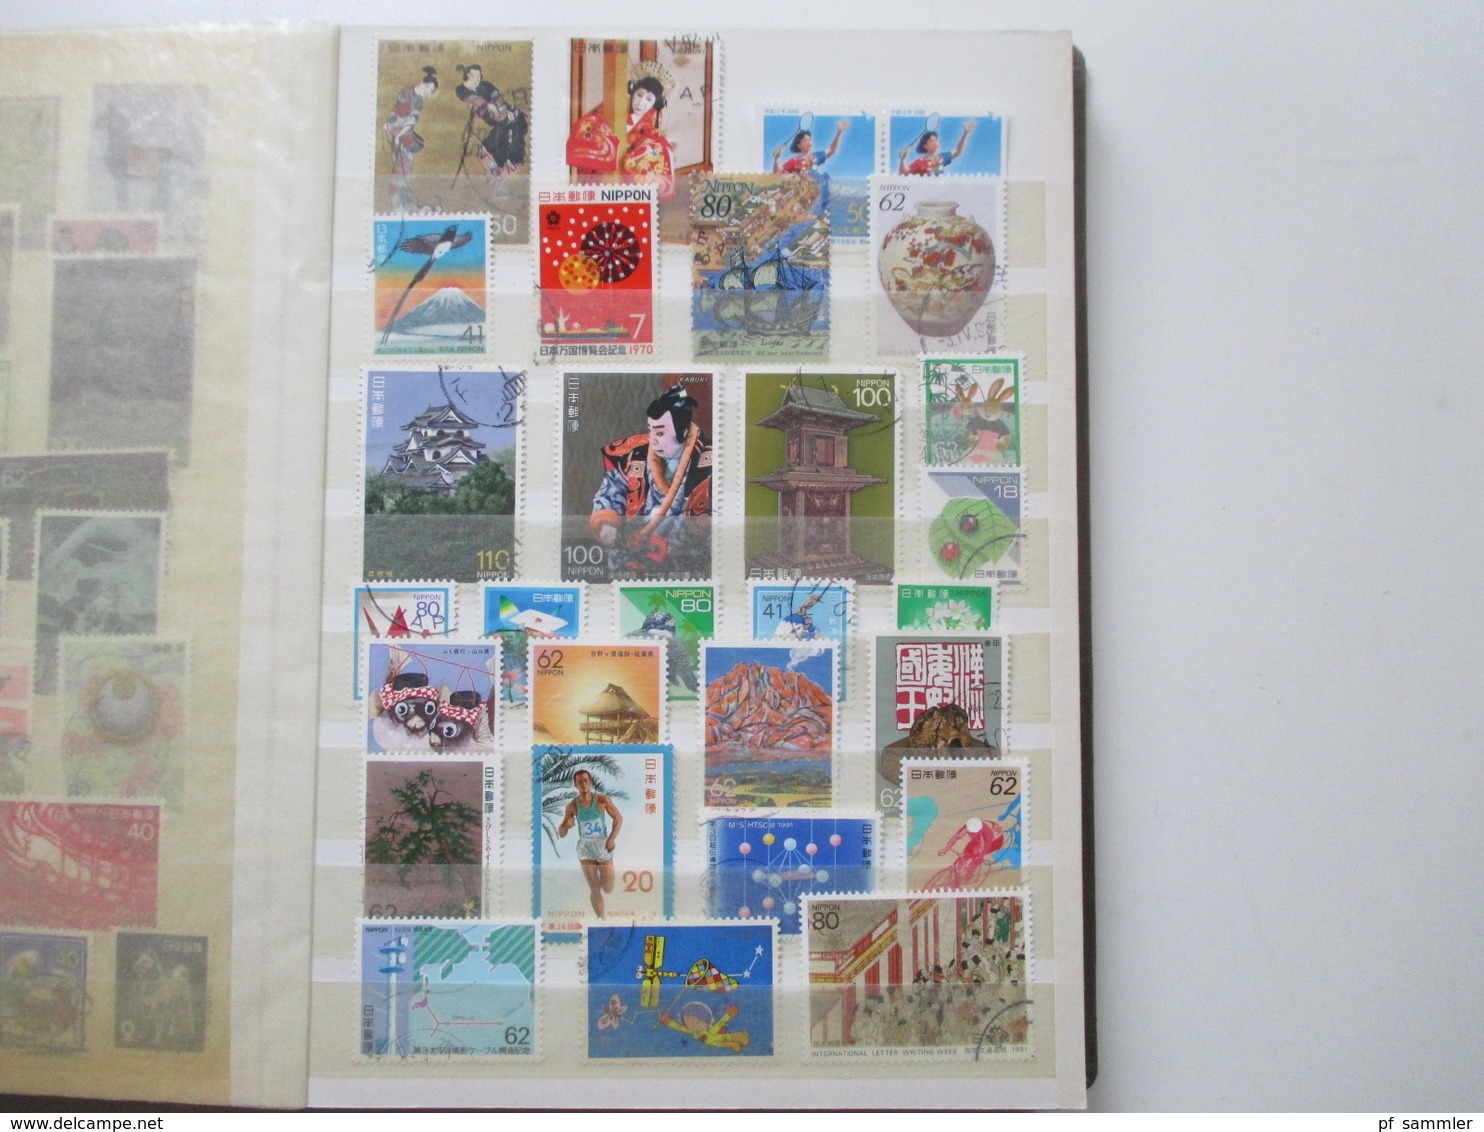 Album Japan ab Klassik - 1990er Jahre mit ca. 550 Marken + 2 Blocks! Überwiegend gestempelt! Fundgrube??!! Motivmarken